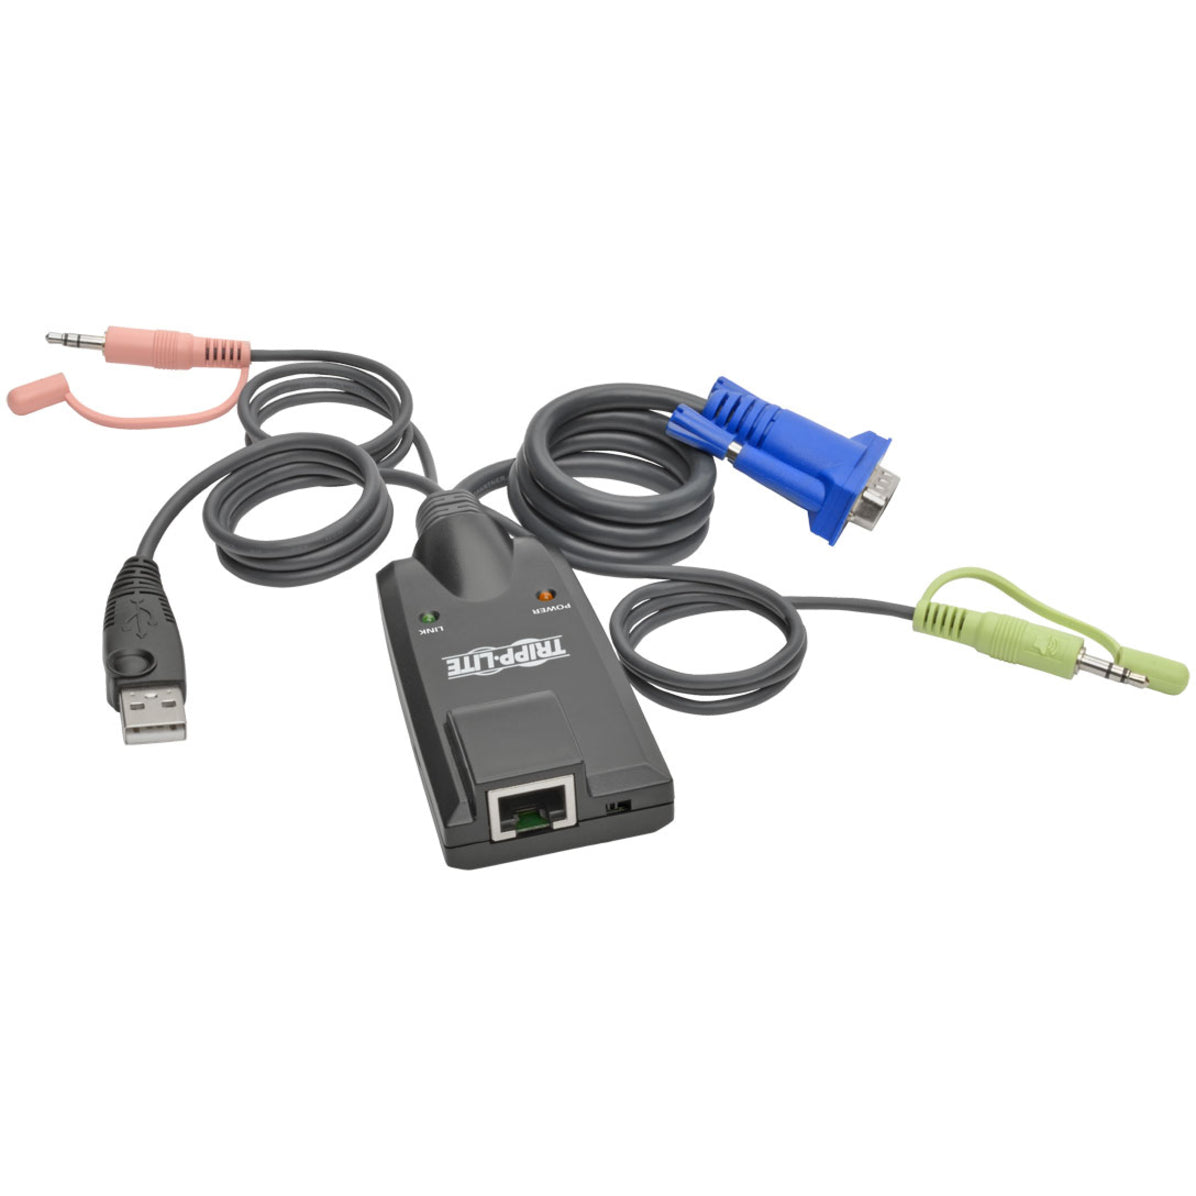 تريب لايت B055-001-USB-VA نتديريكتور وحدة واجهة خادم USB ، موسع KVM مع منافذ USB ، VGA ، سماعة رأس ، ميكروفون ، وشبكة (منافذ RJ-45)  العلامة التجارية: تريب لايت